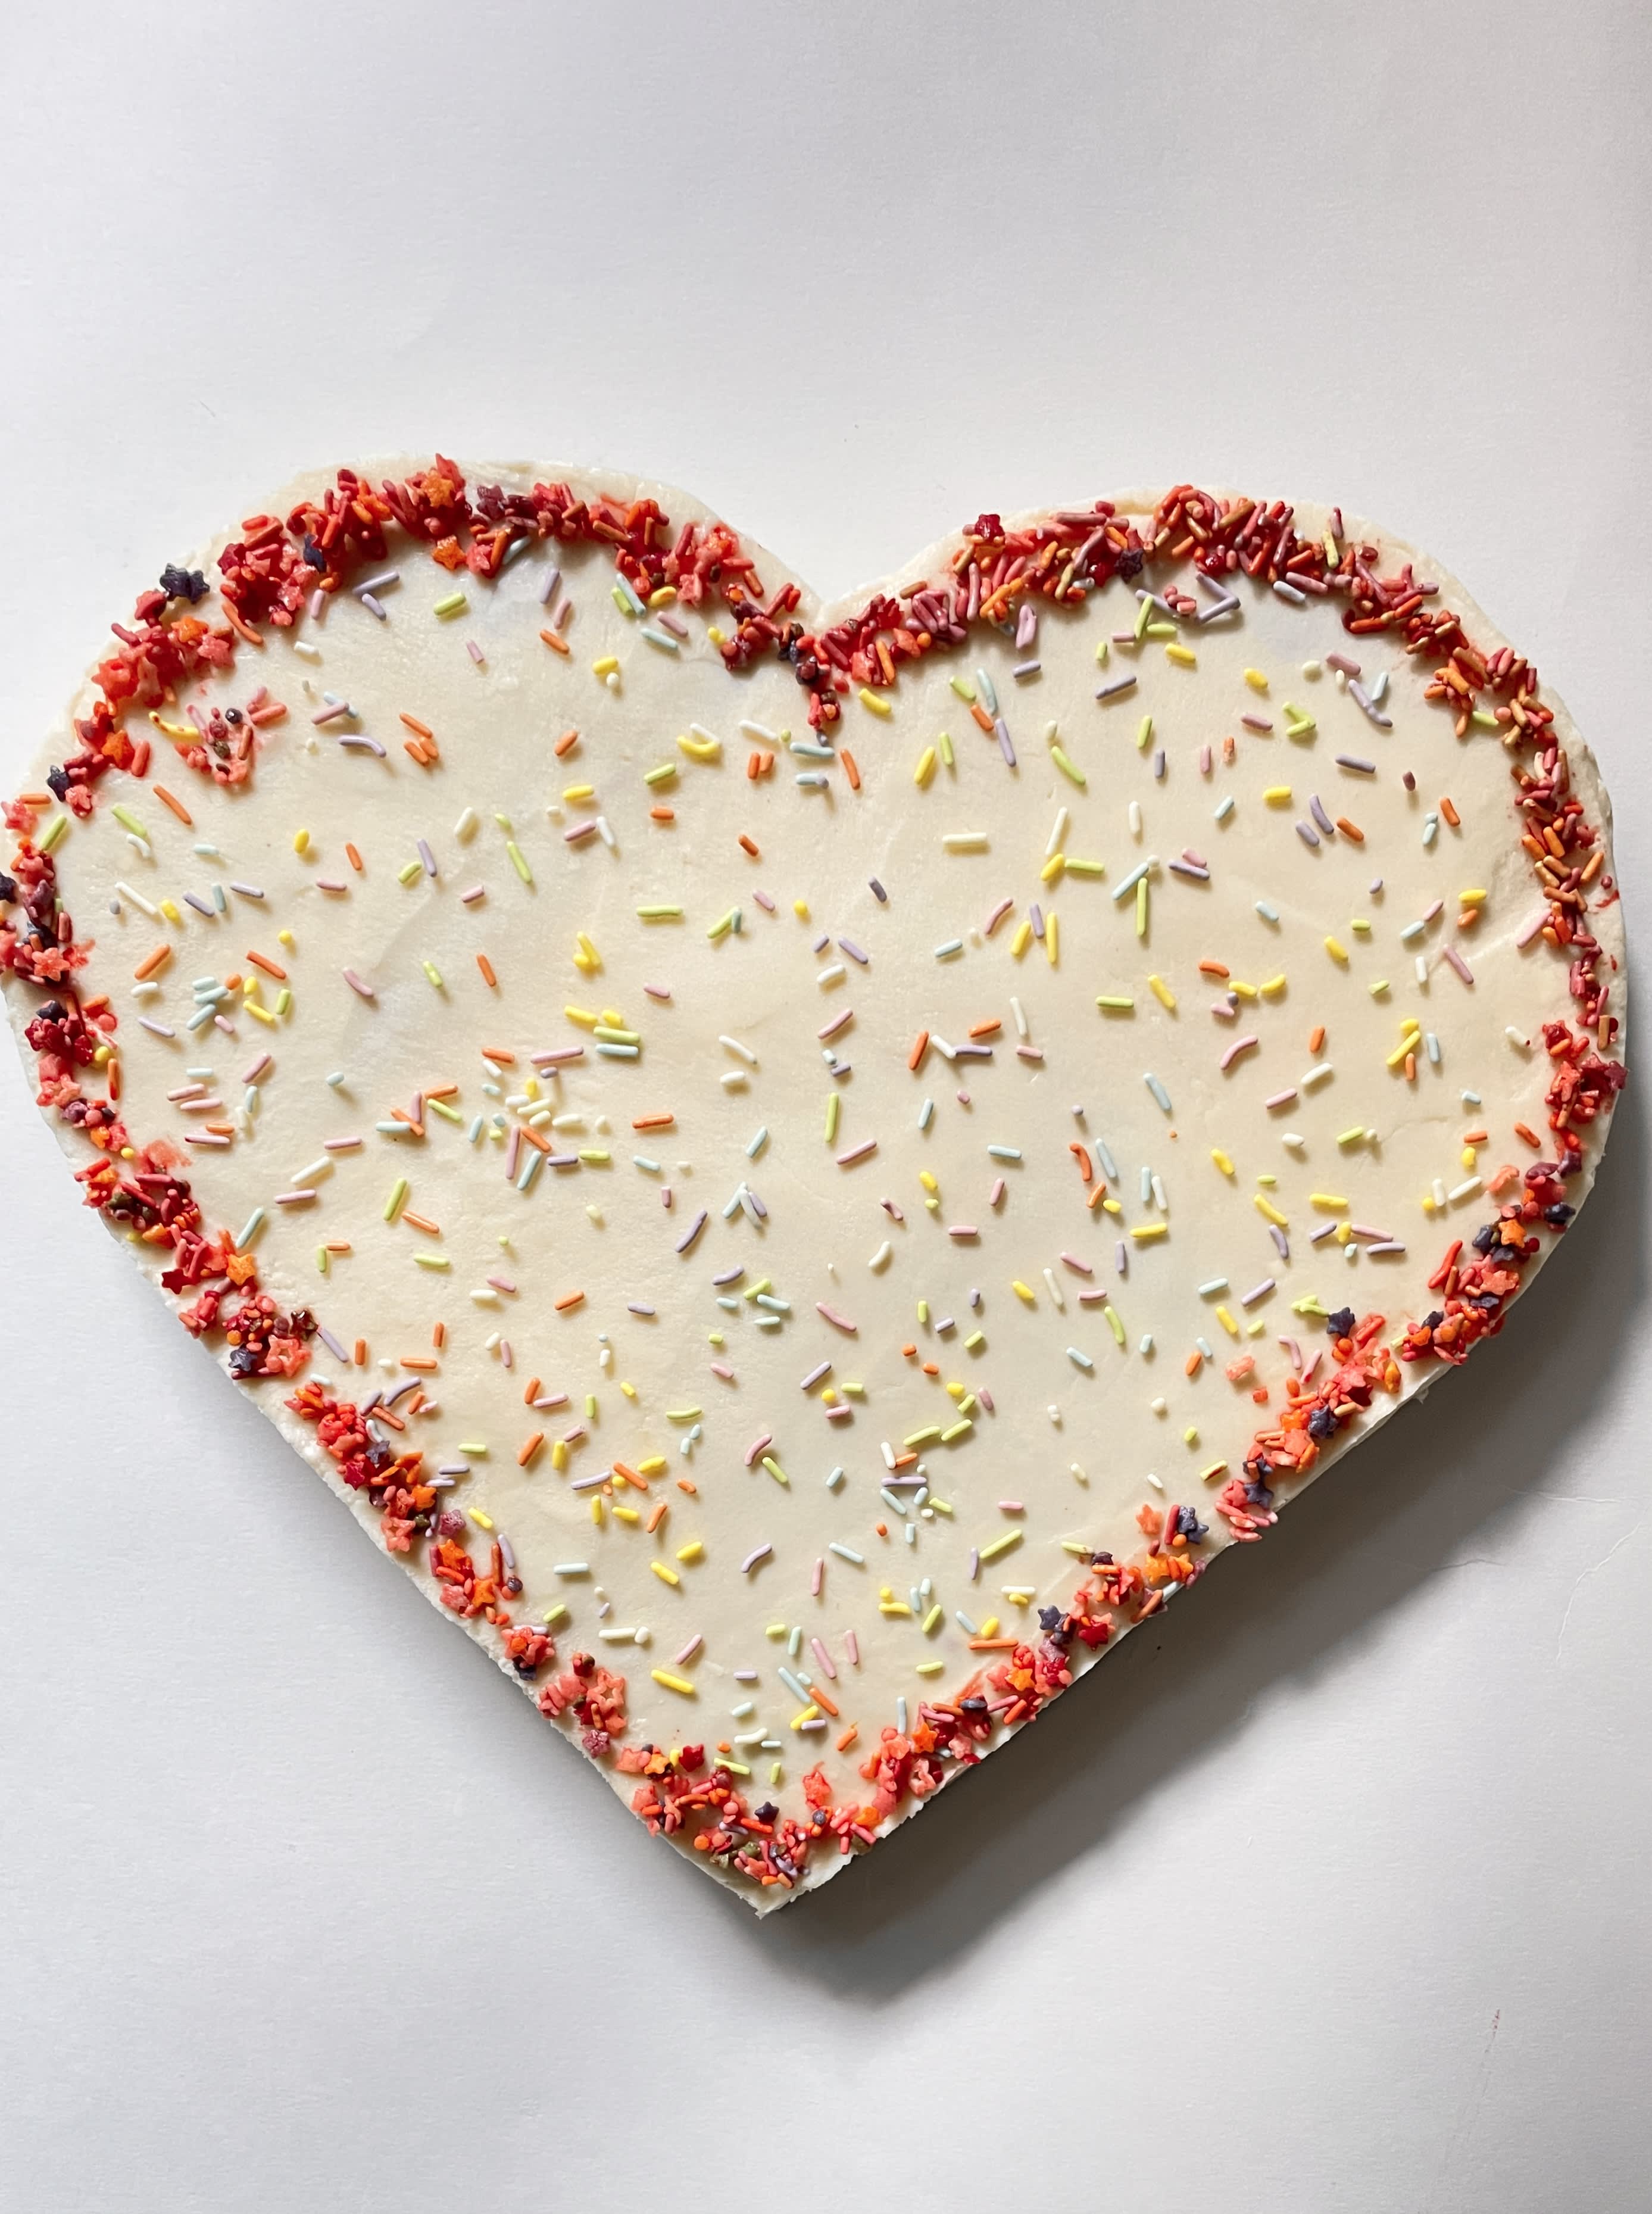 https://cdn.apartmenttherapy.info/image/upload/v1669666052/k/Edit/2023-01-Heart-Shaped-Cake/heart-shaped-cake-2.jpg